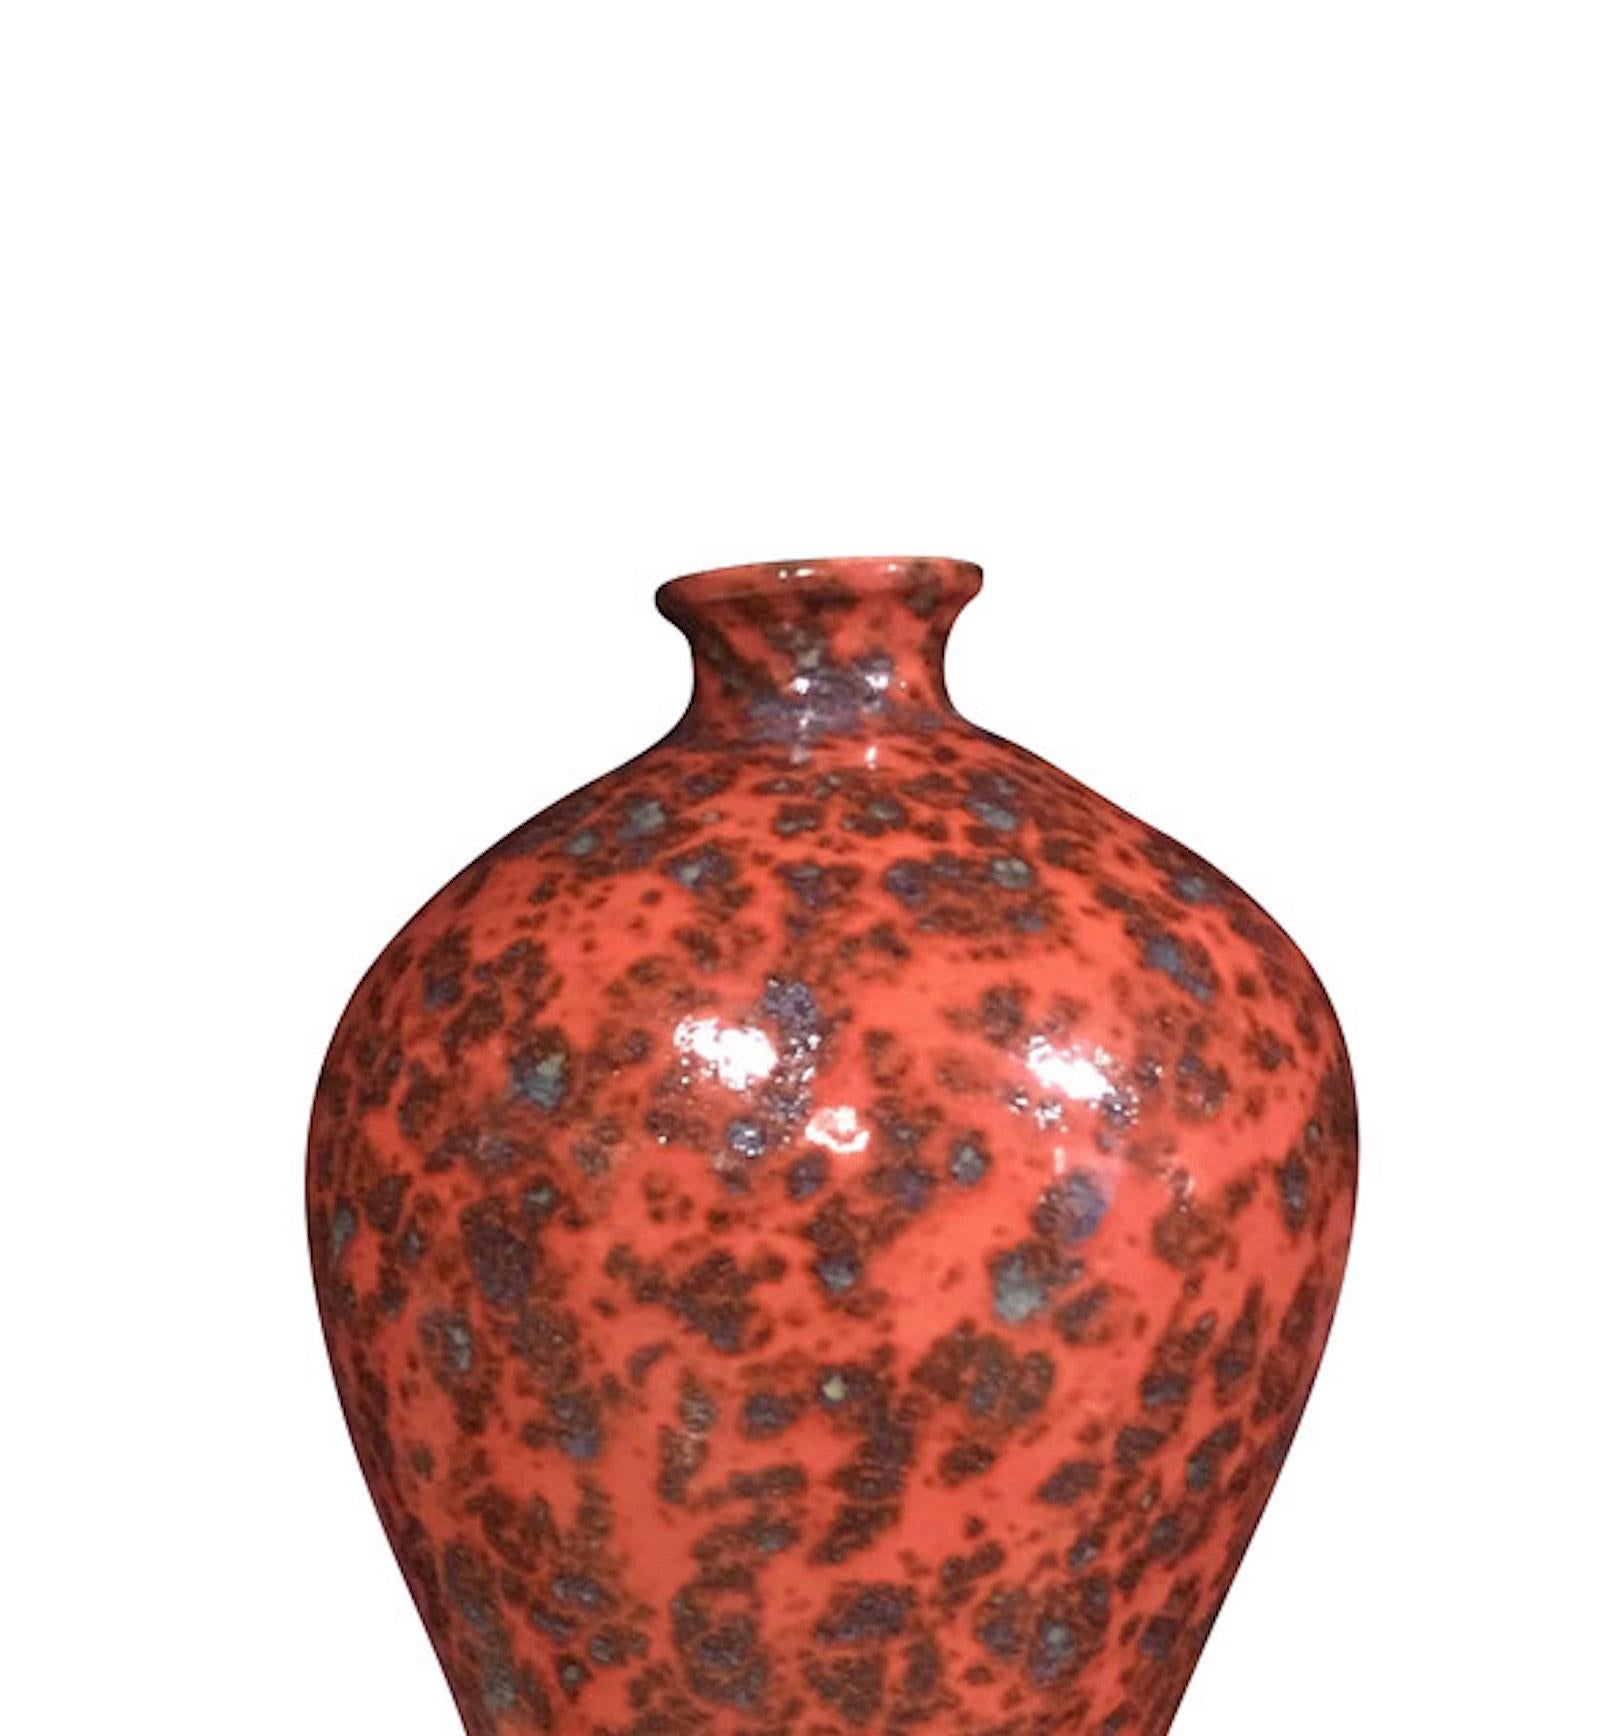 Contemporary Chinese orange splattered glaze porcelain vase.
Narrow opening.